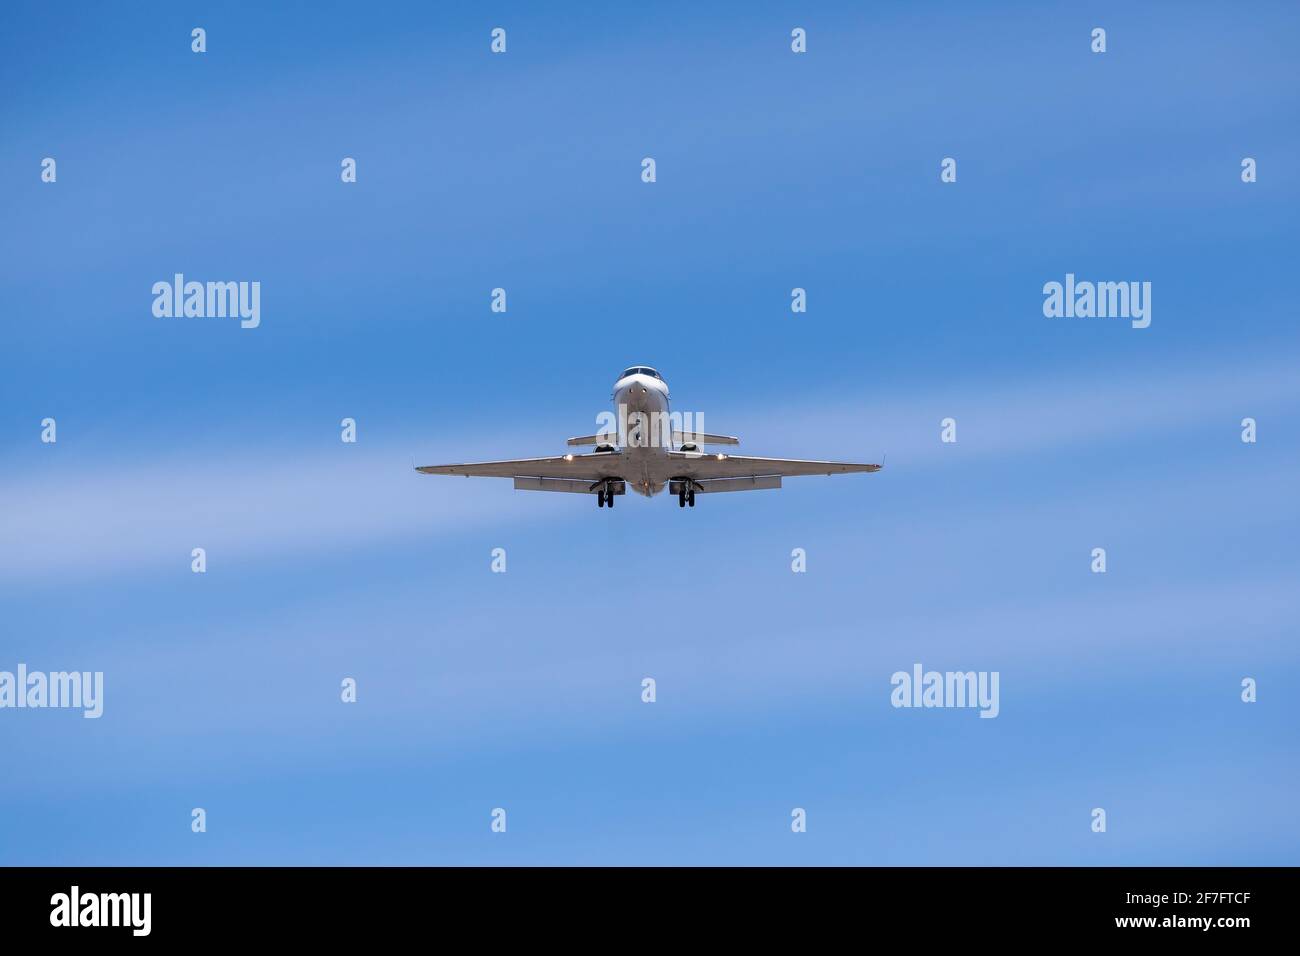 Business jet landing against blue sky Stock Photo